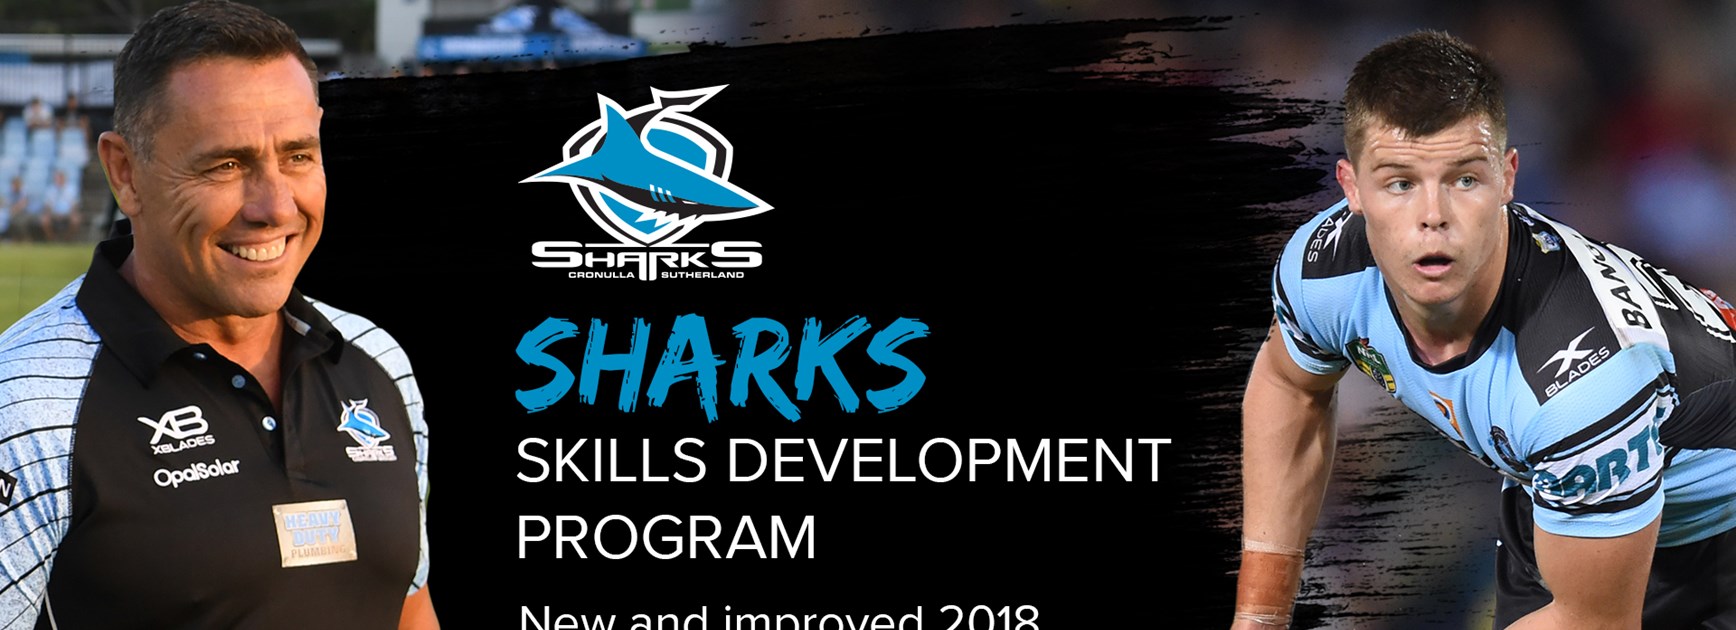 Join the Sharks Skills Development Program in 2018